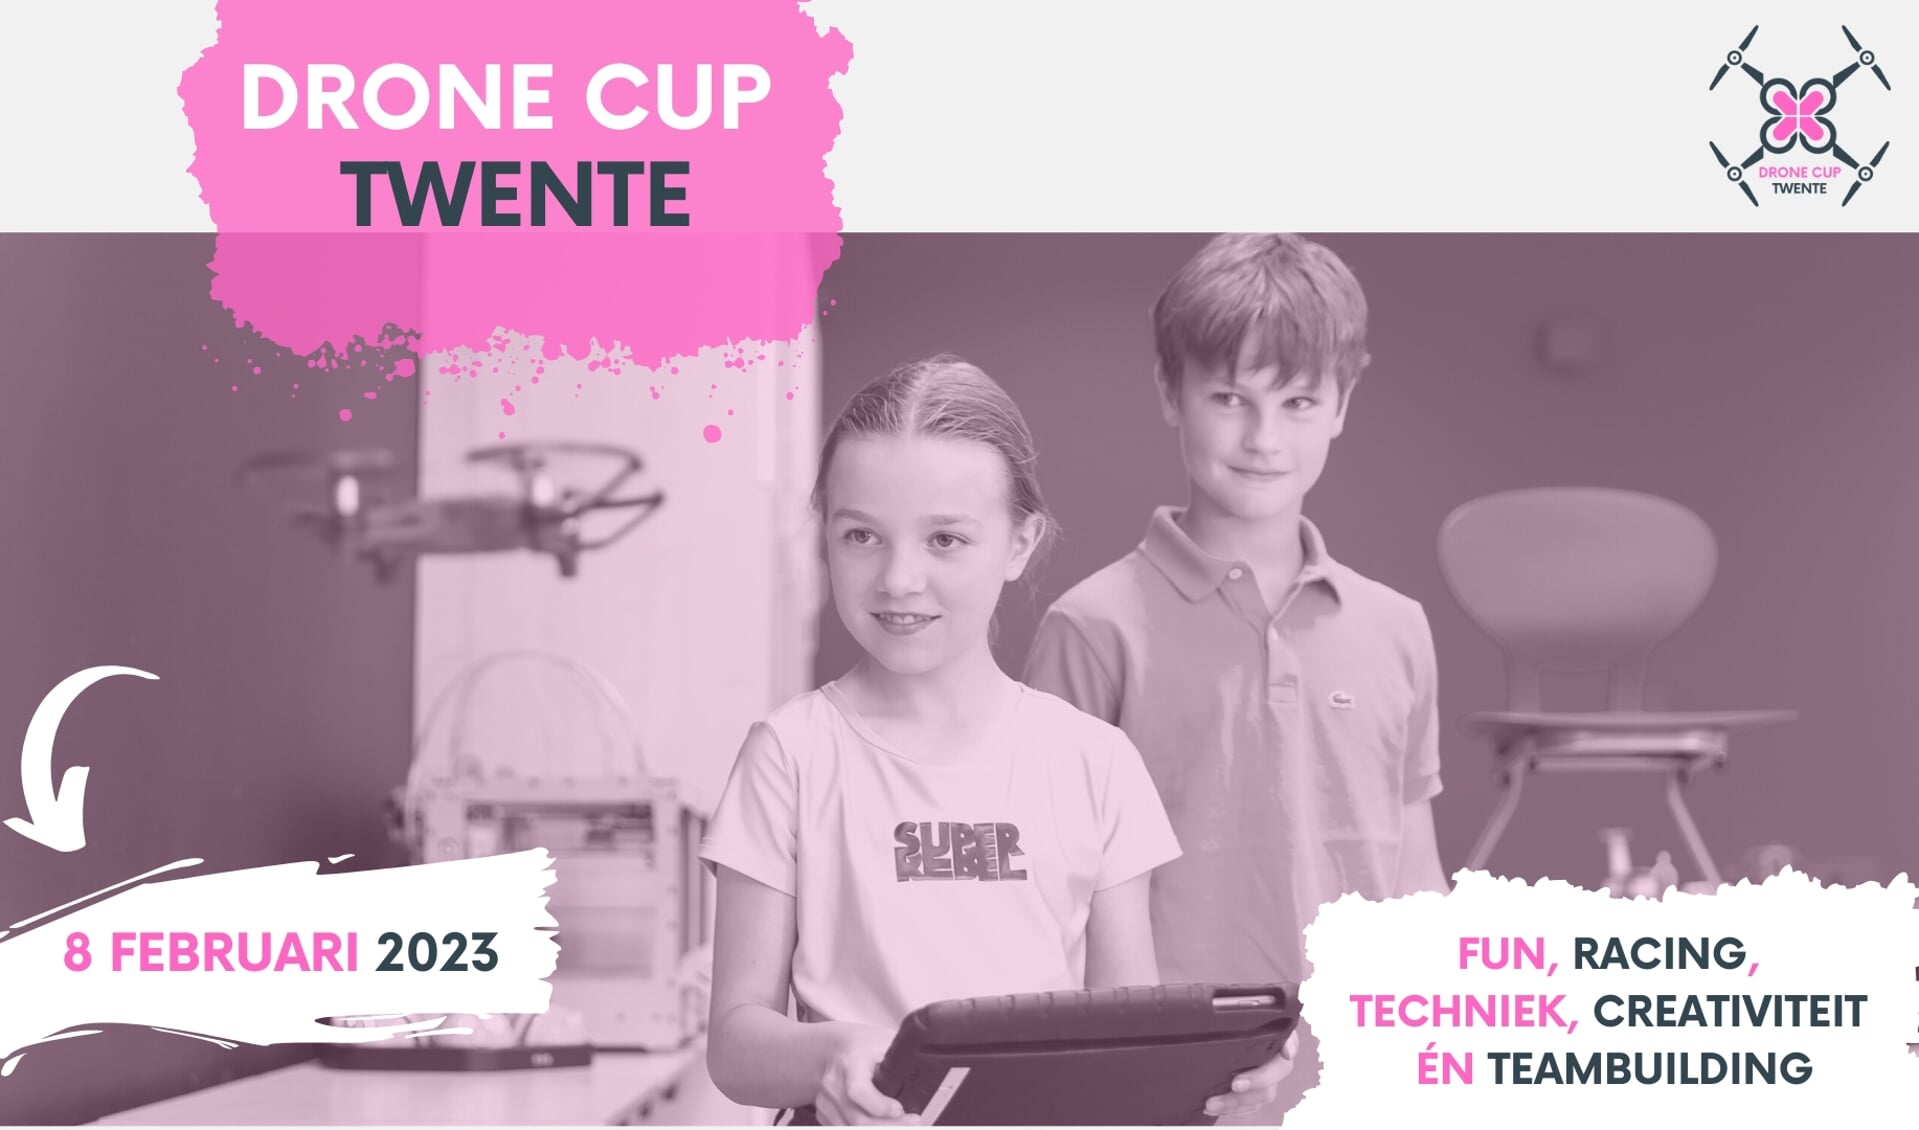 Drone Cup Twente 2023